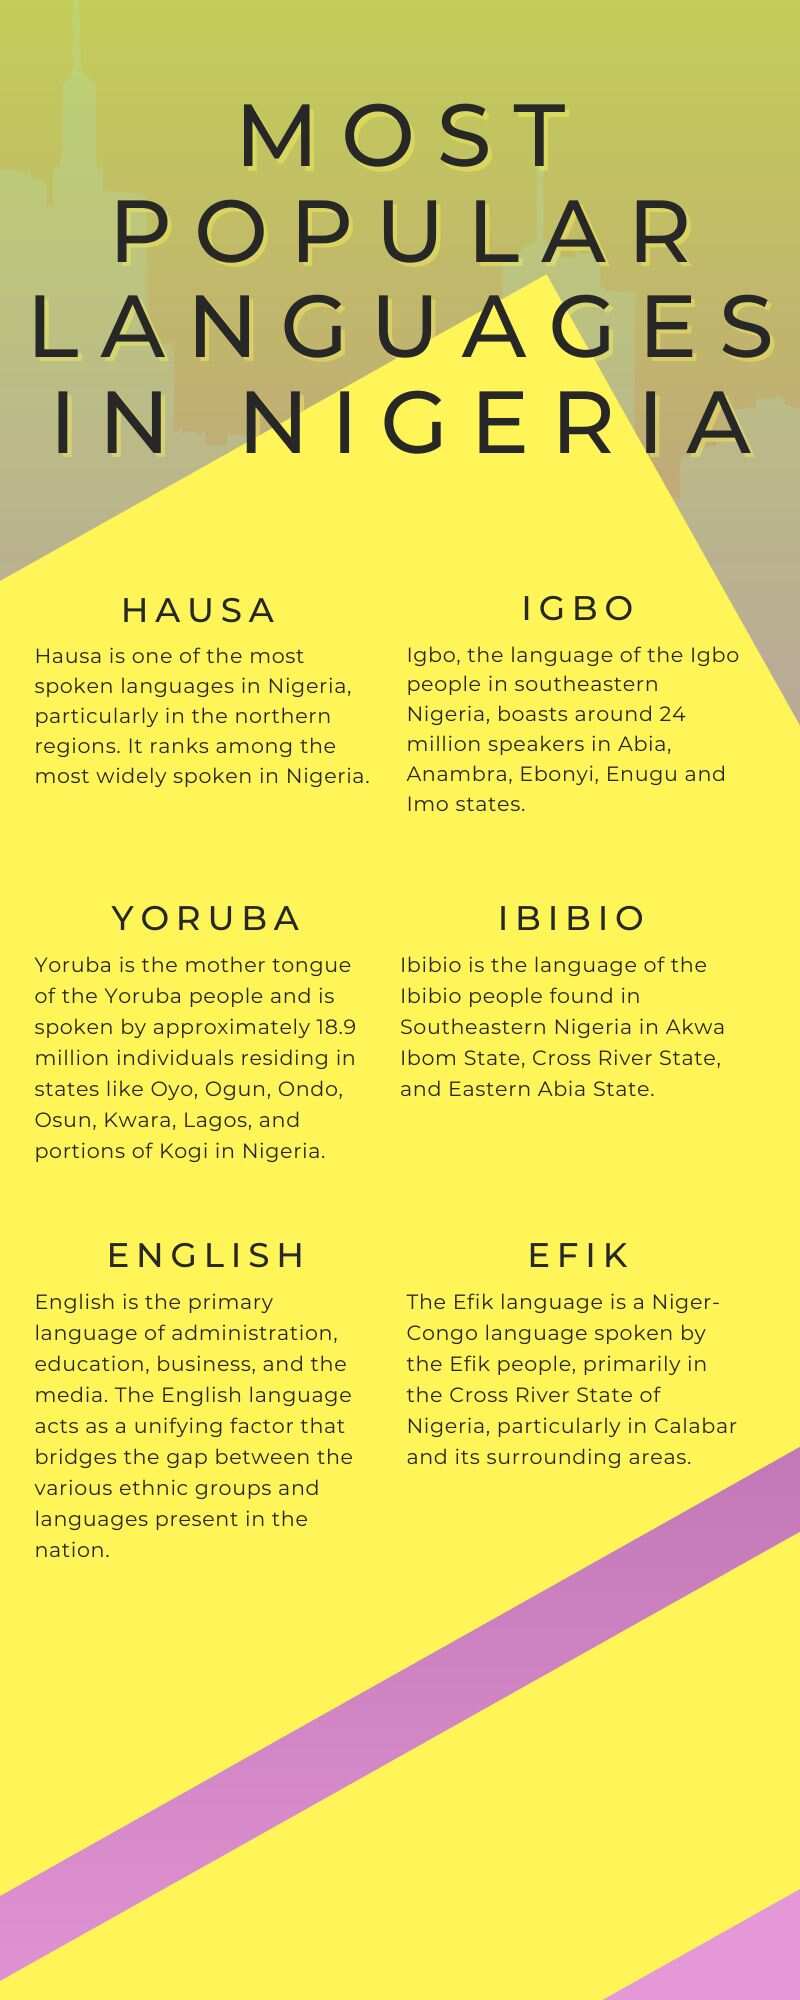 Most popular languages in Nigeria